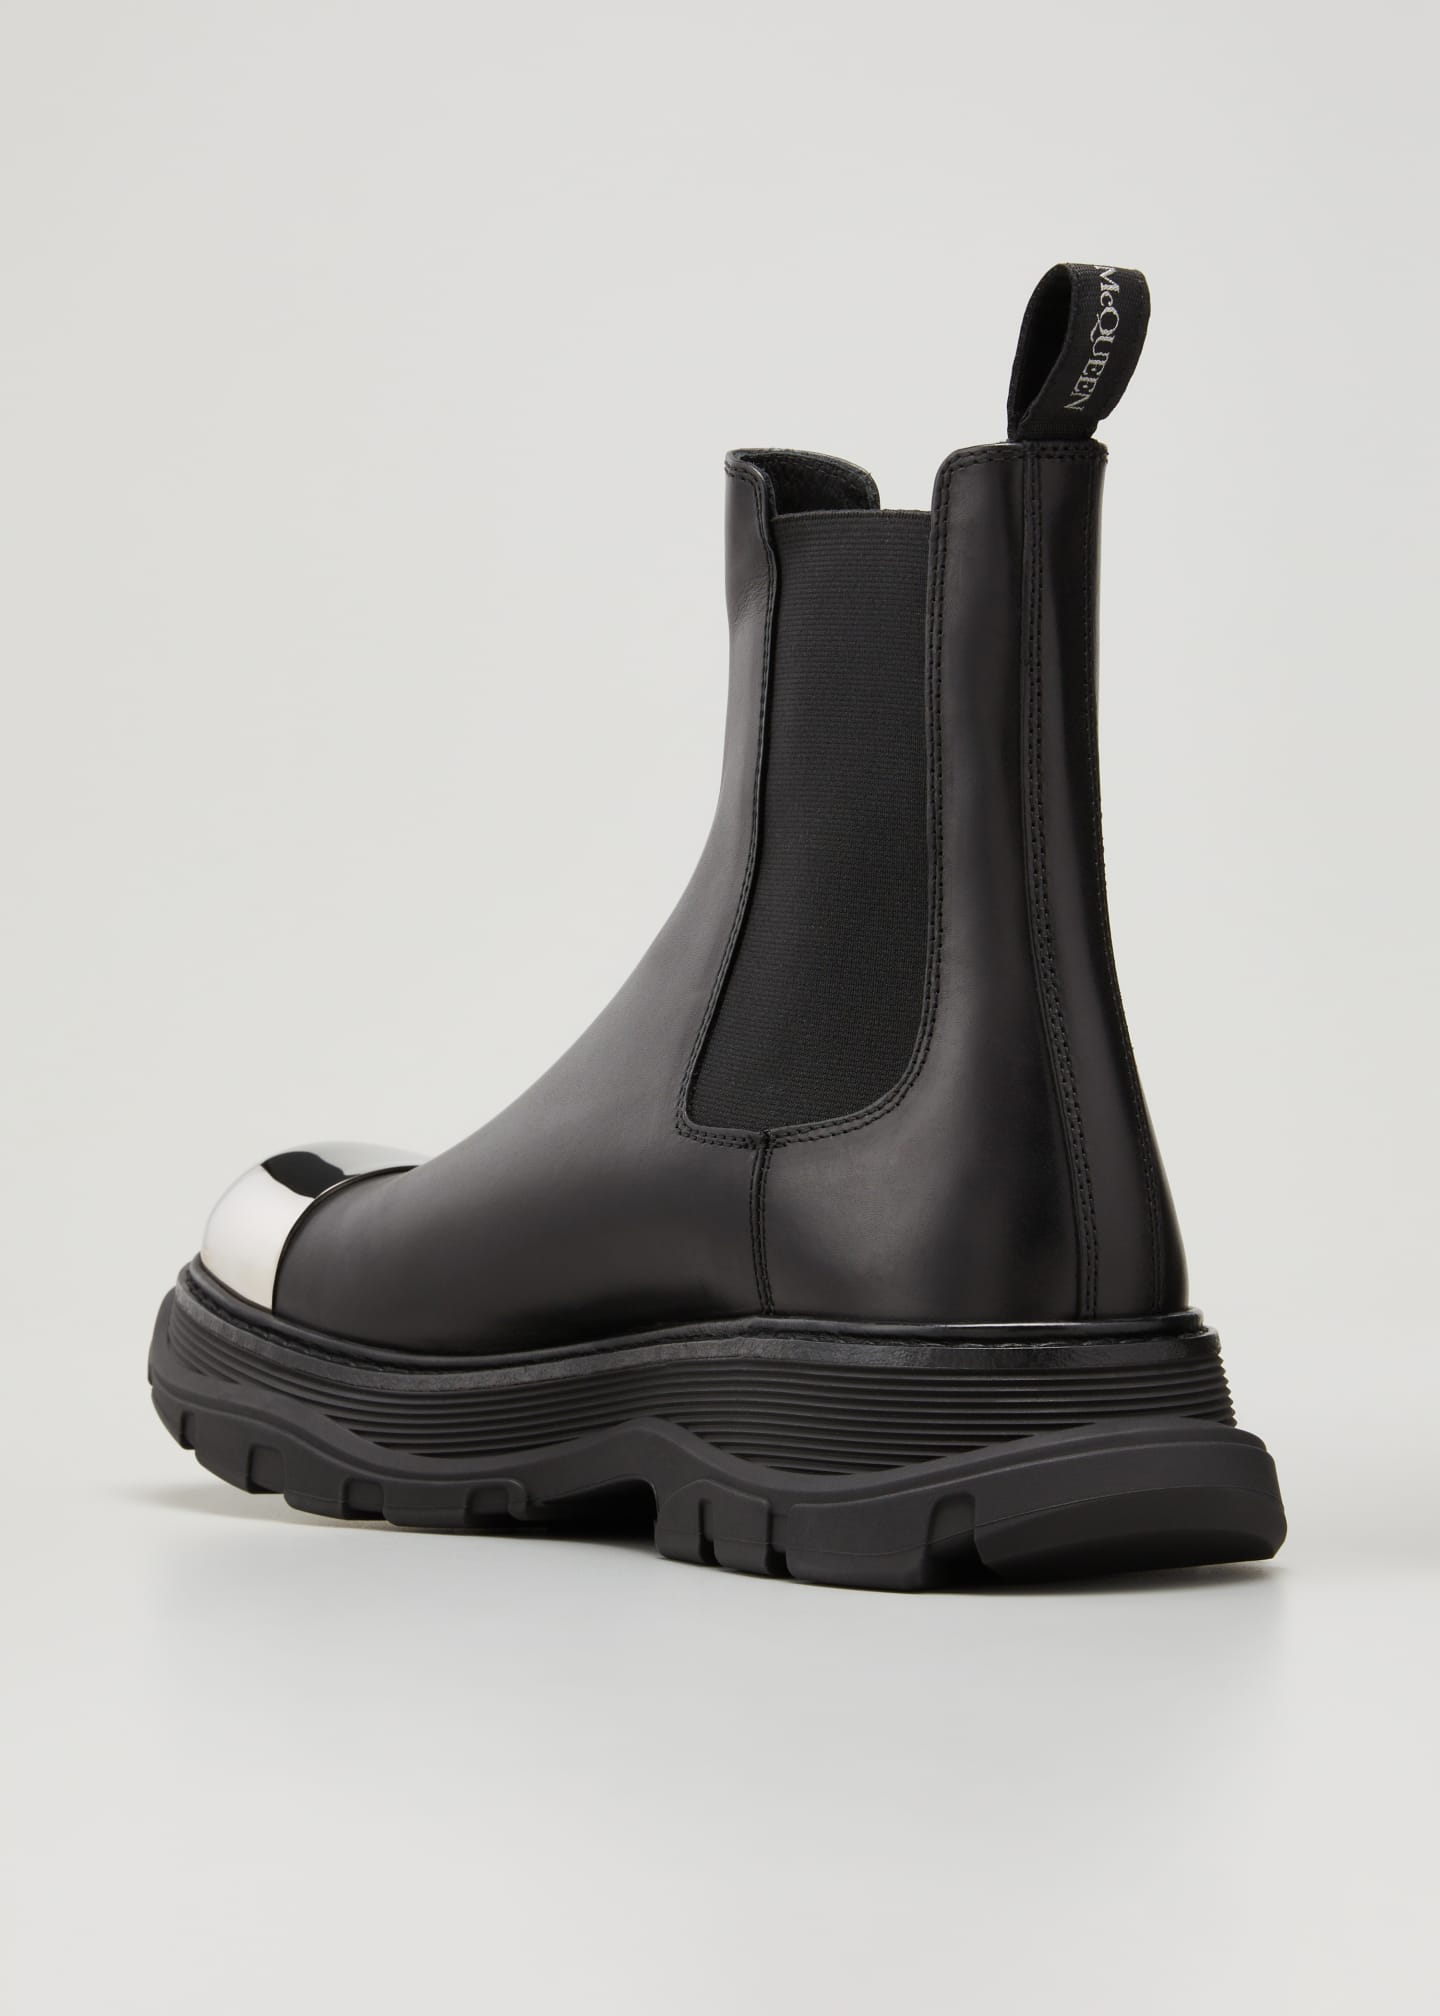 Alexander McQueen Men's Metal Cap-Toe Leather Chelsea Boots - Bergdorf ...